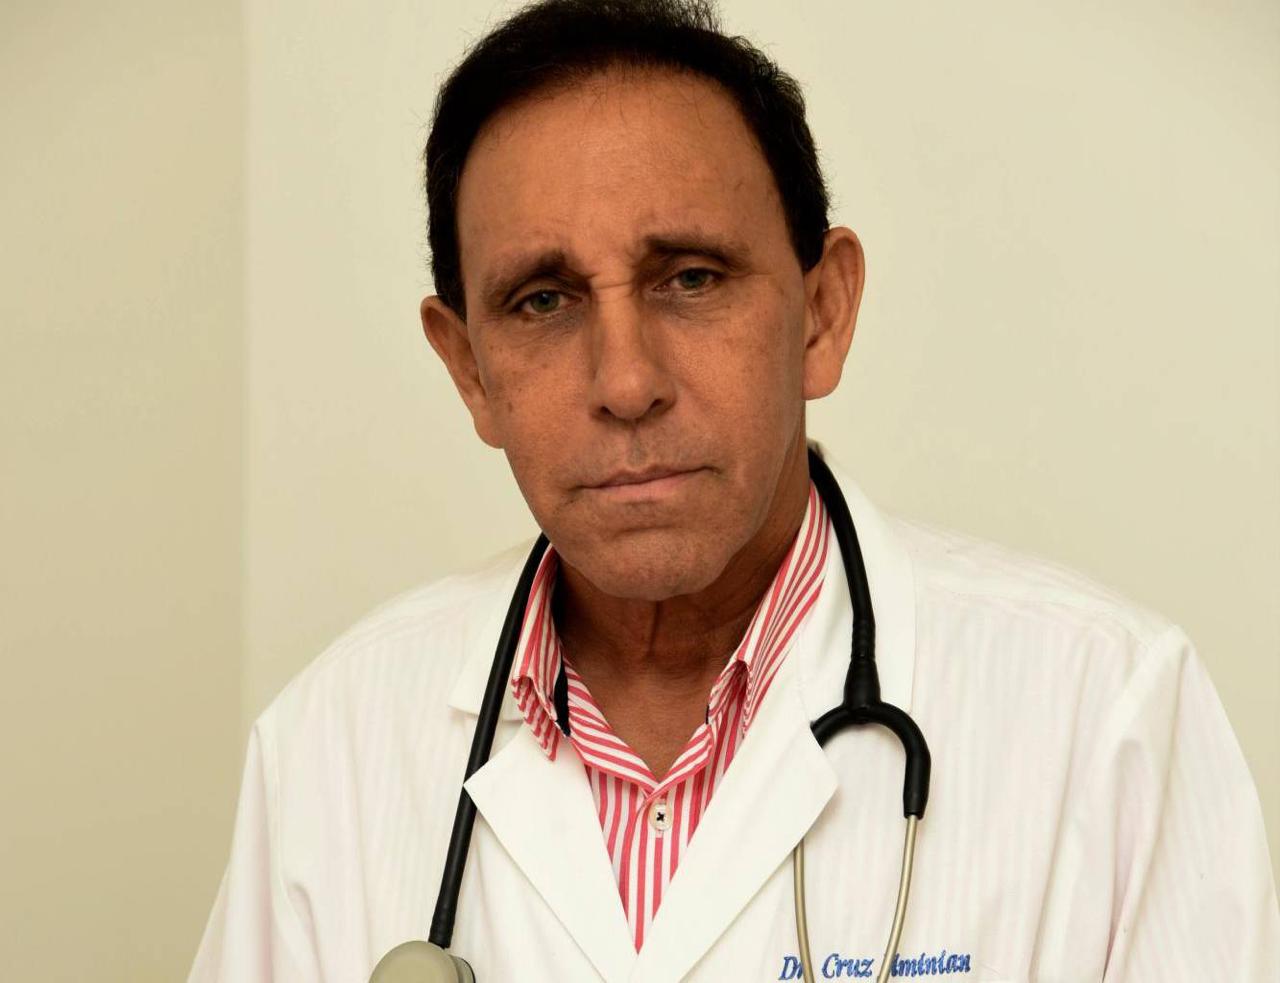 Salud del Doctor Félix Antonio Cruz Jiminián se mantiene estable